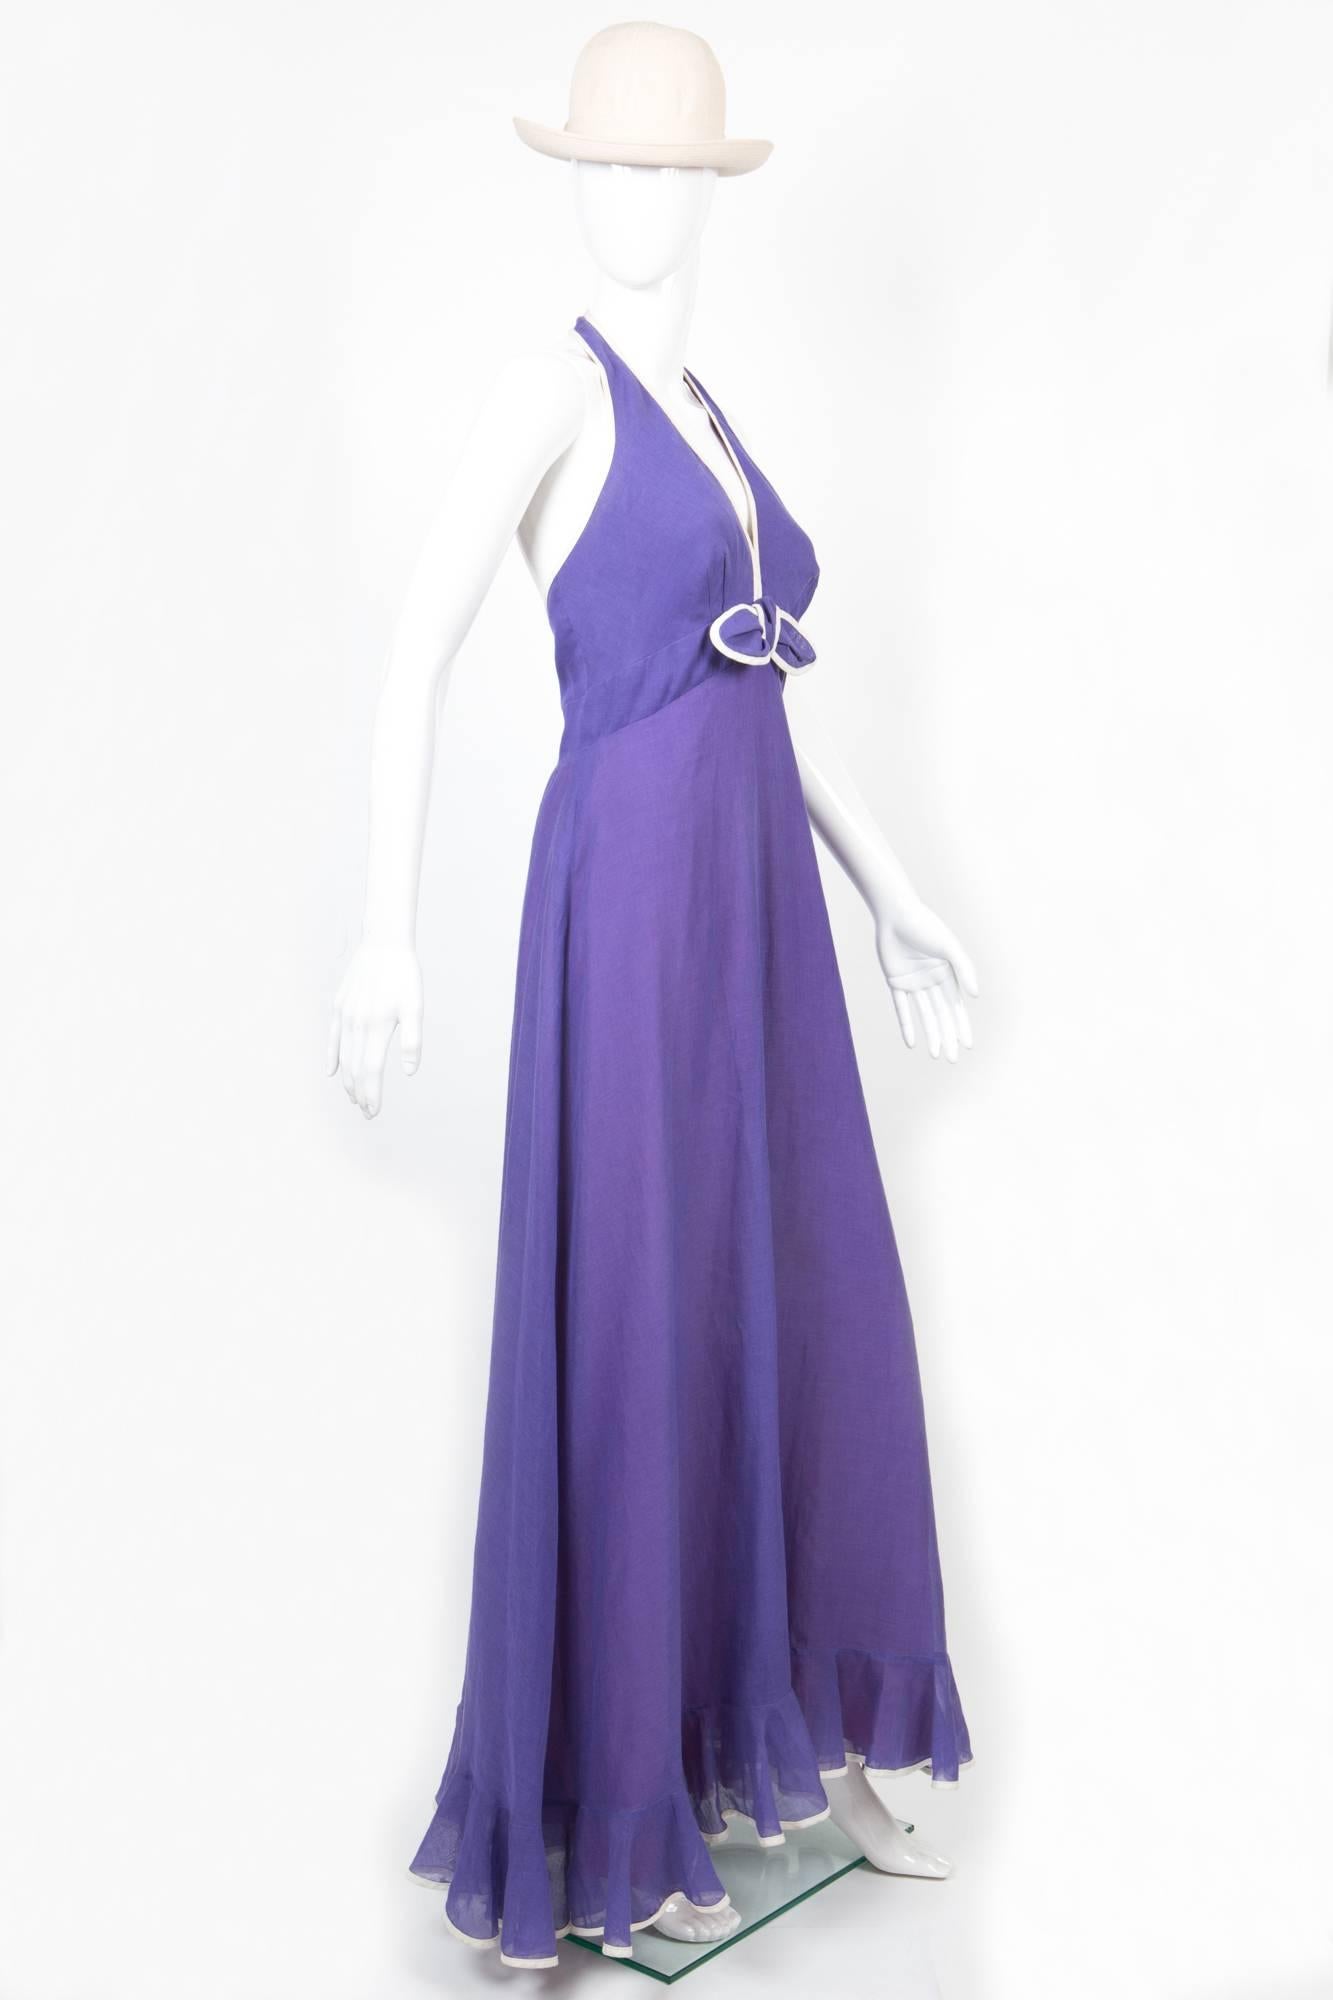 Fantastique robe violette en voile de coton fin des années 1972 de ELLIETTE LEWIS (Miss Elliette), avec un passepoil blanc, une fermeture éclair au centre du dos et un bouton central au dos. Portée par  Sandra Smith dans Columbo The Greenhouse